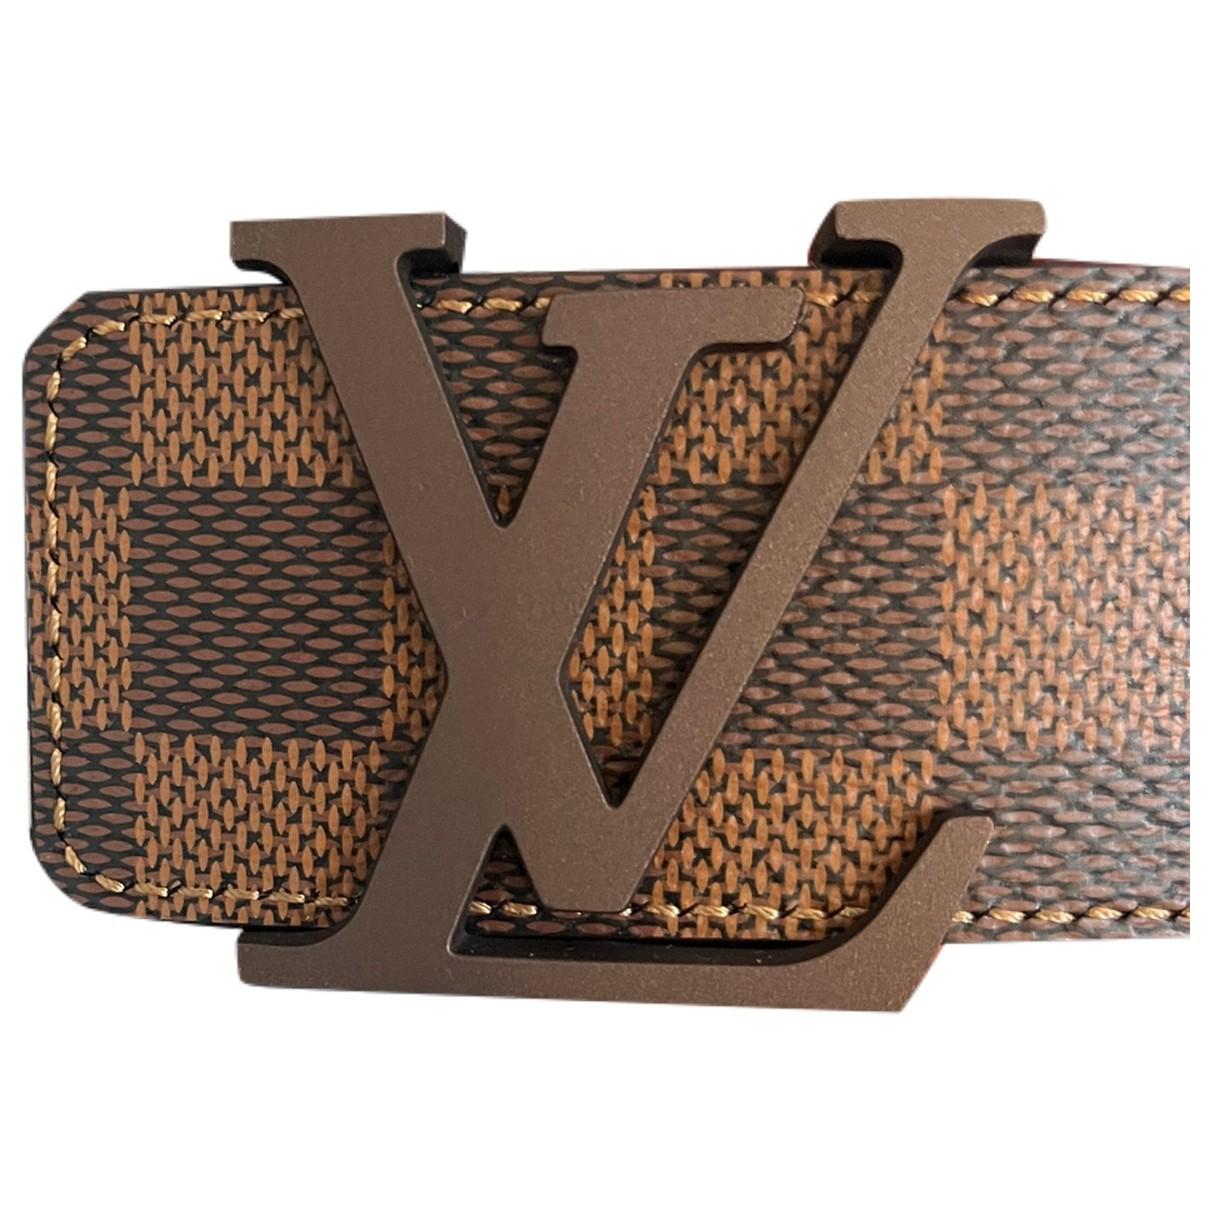 Shape cloth belt Louis Vuitton Multicolour size 90 cm in Cloth - 30690325